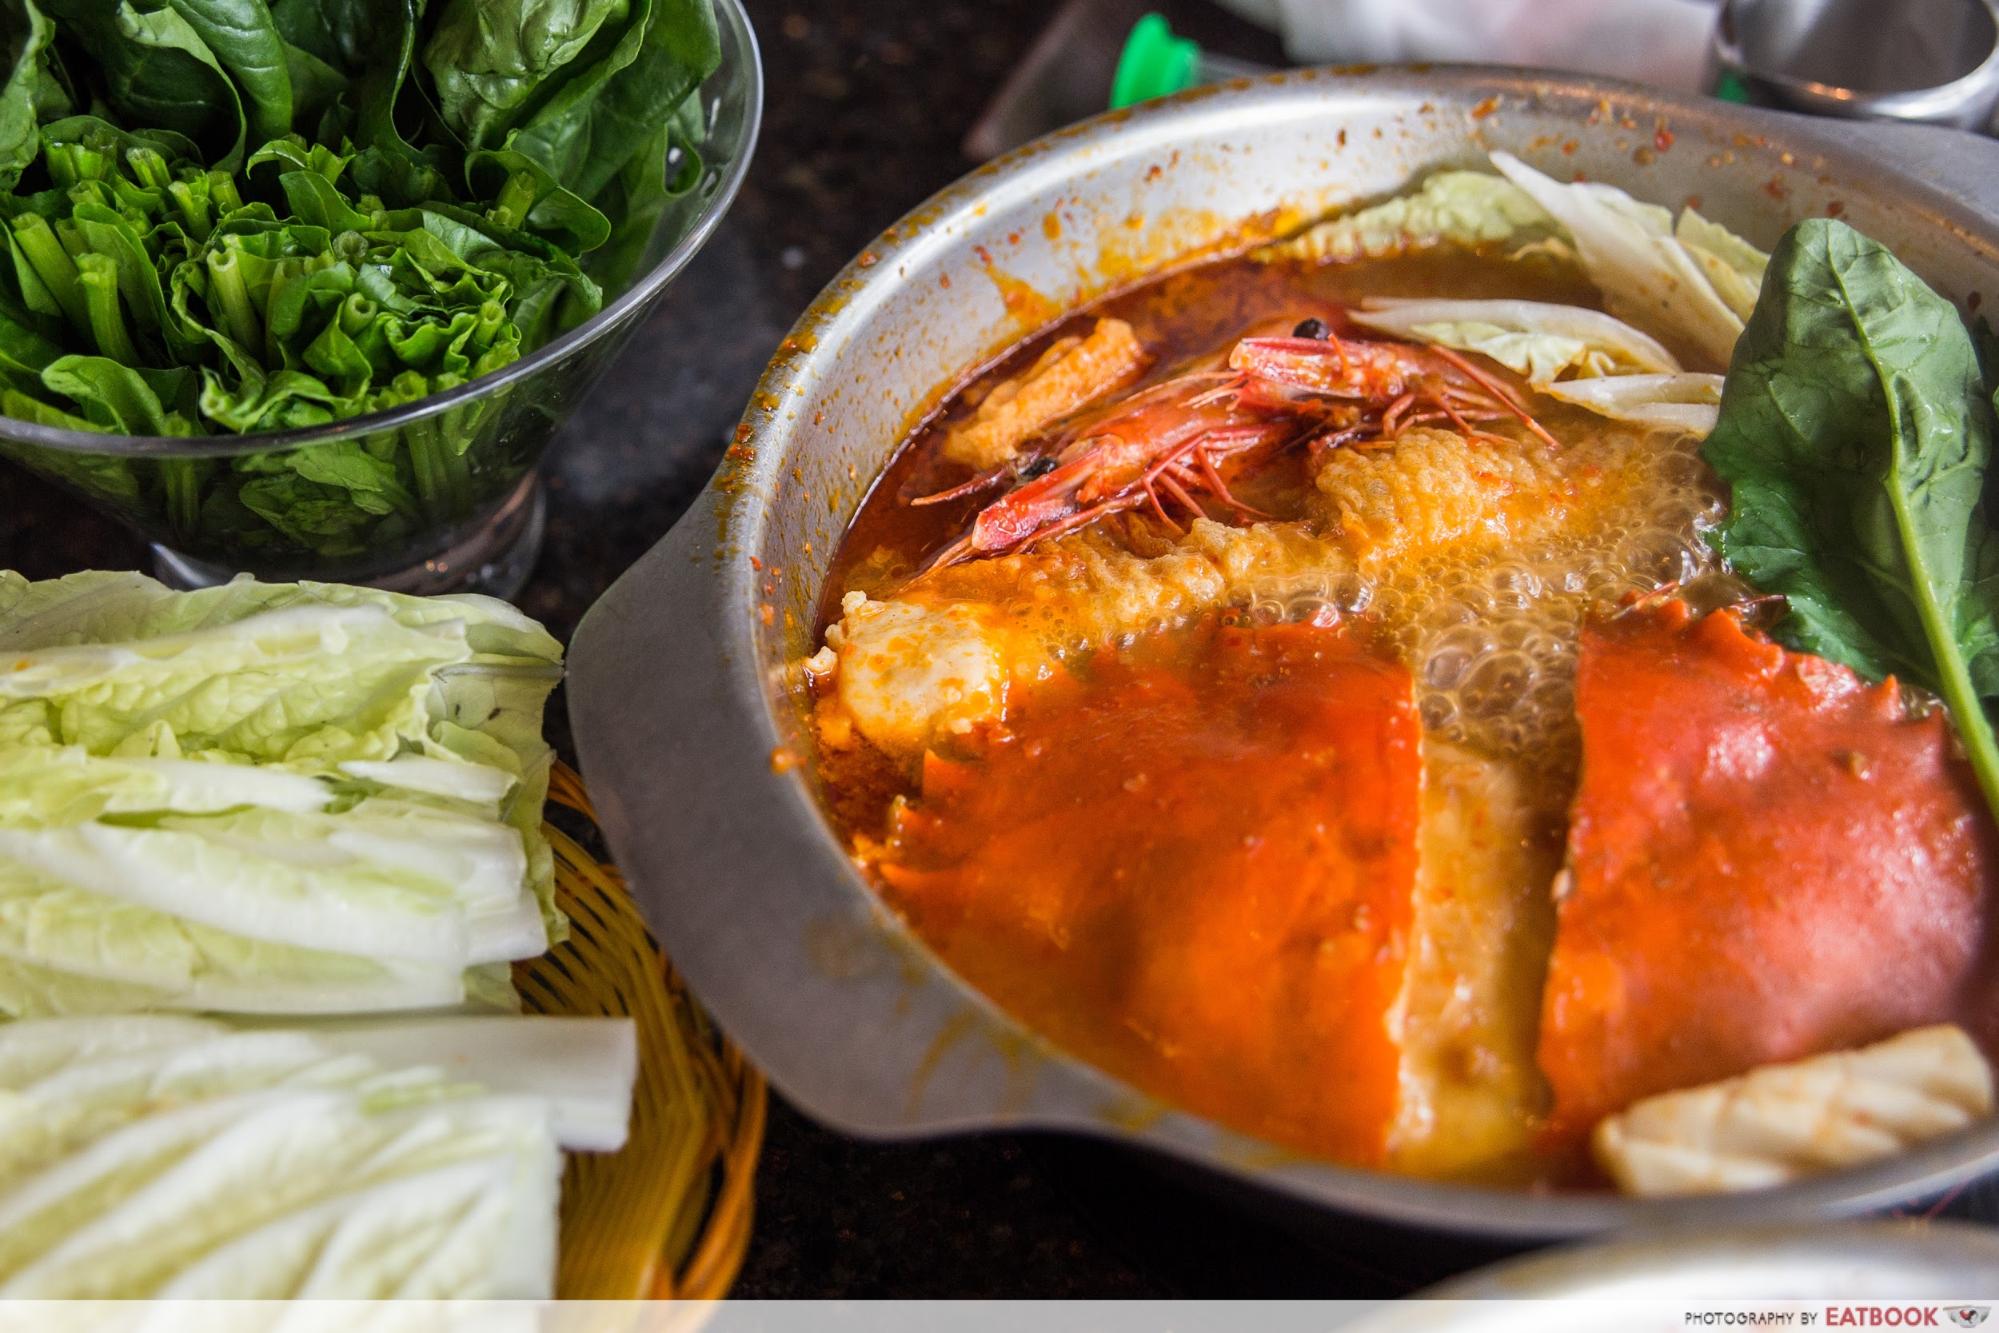 Chilli crab steamboat - chilli crab soup